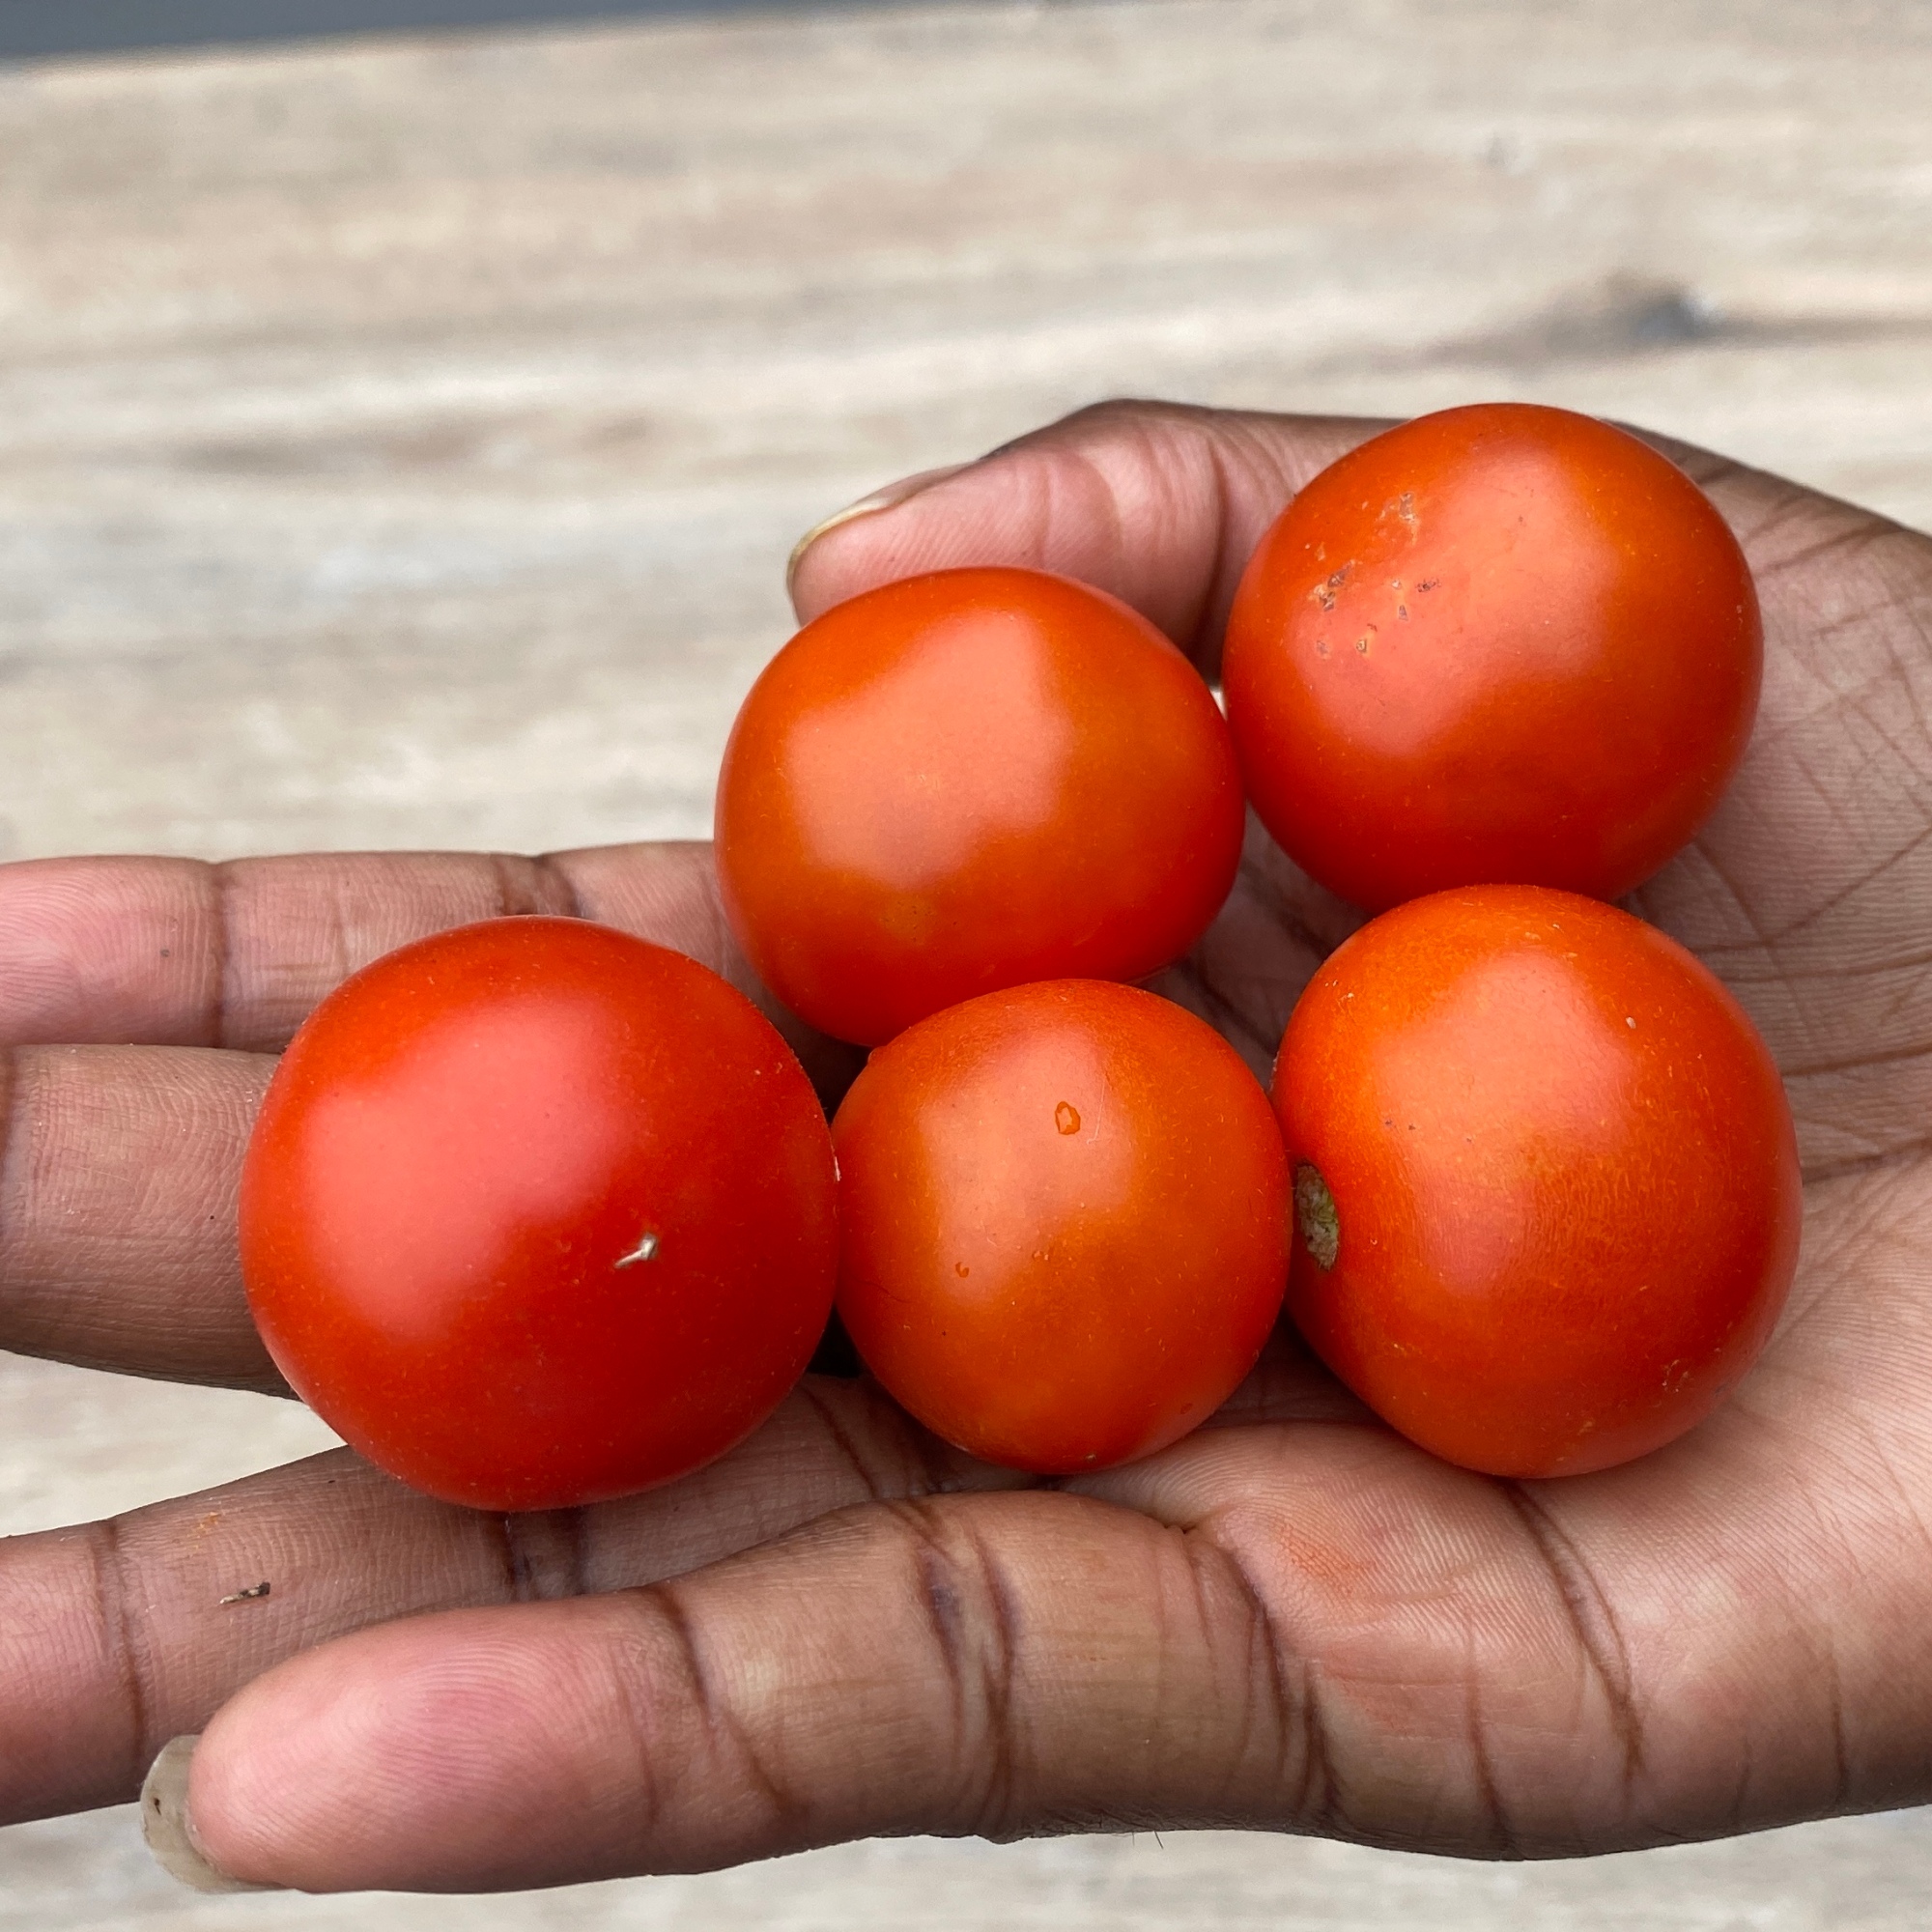 My cherry tomatoes